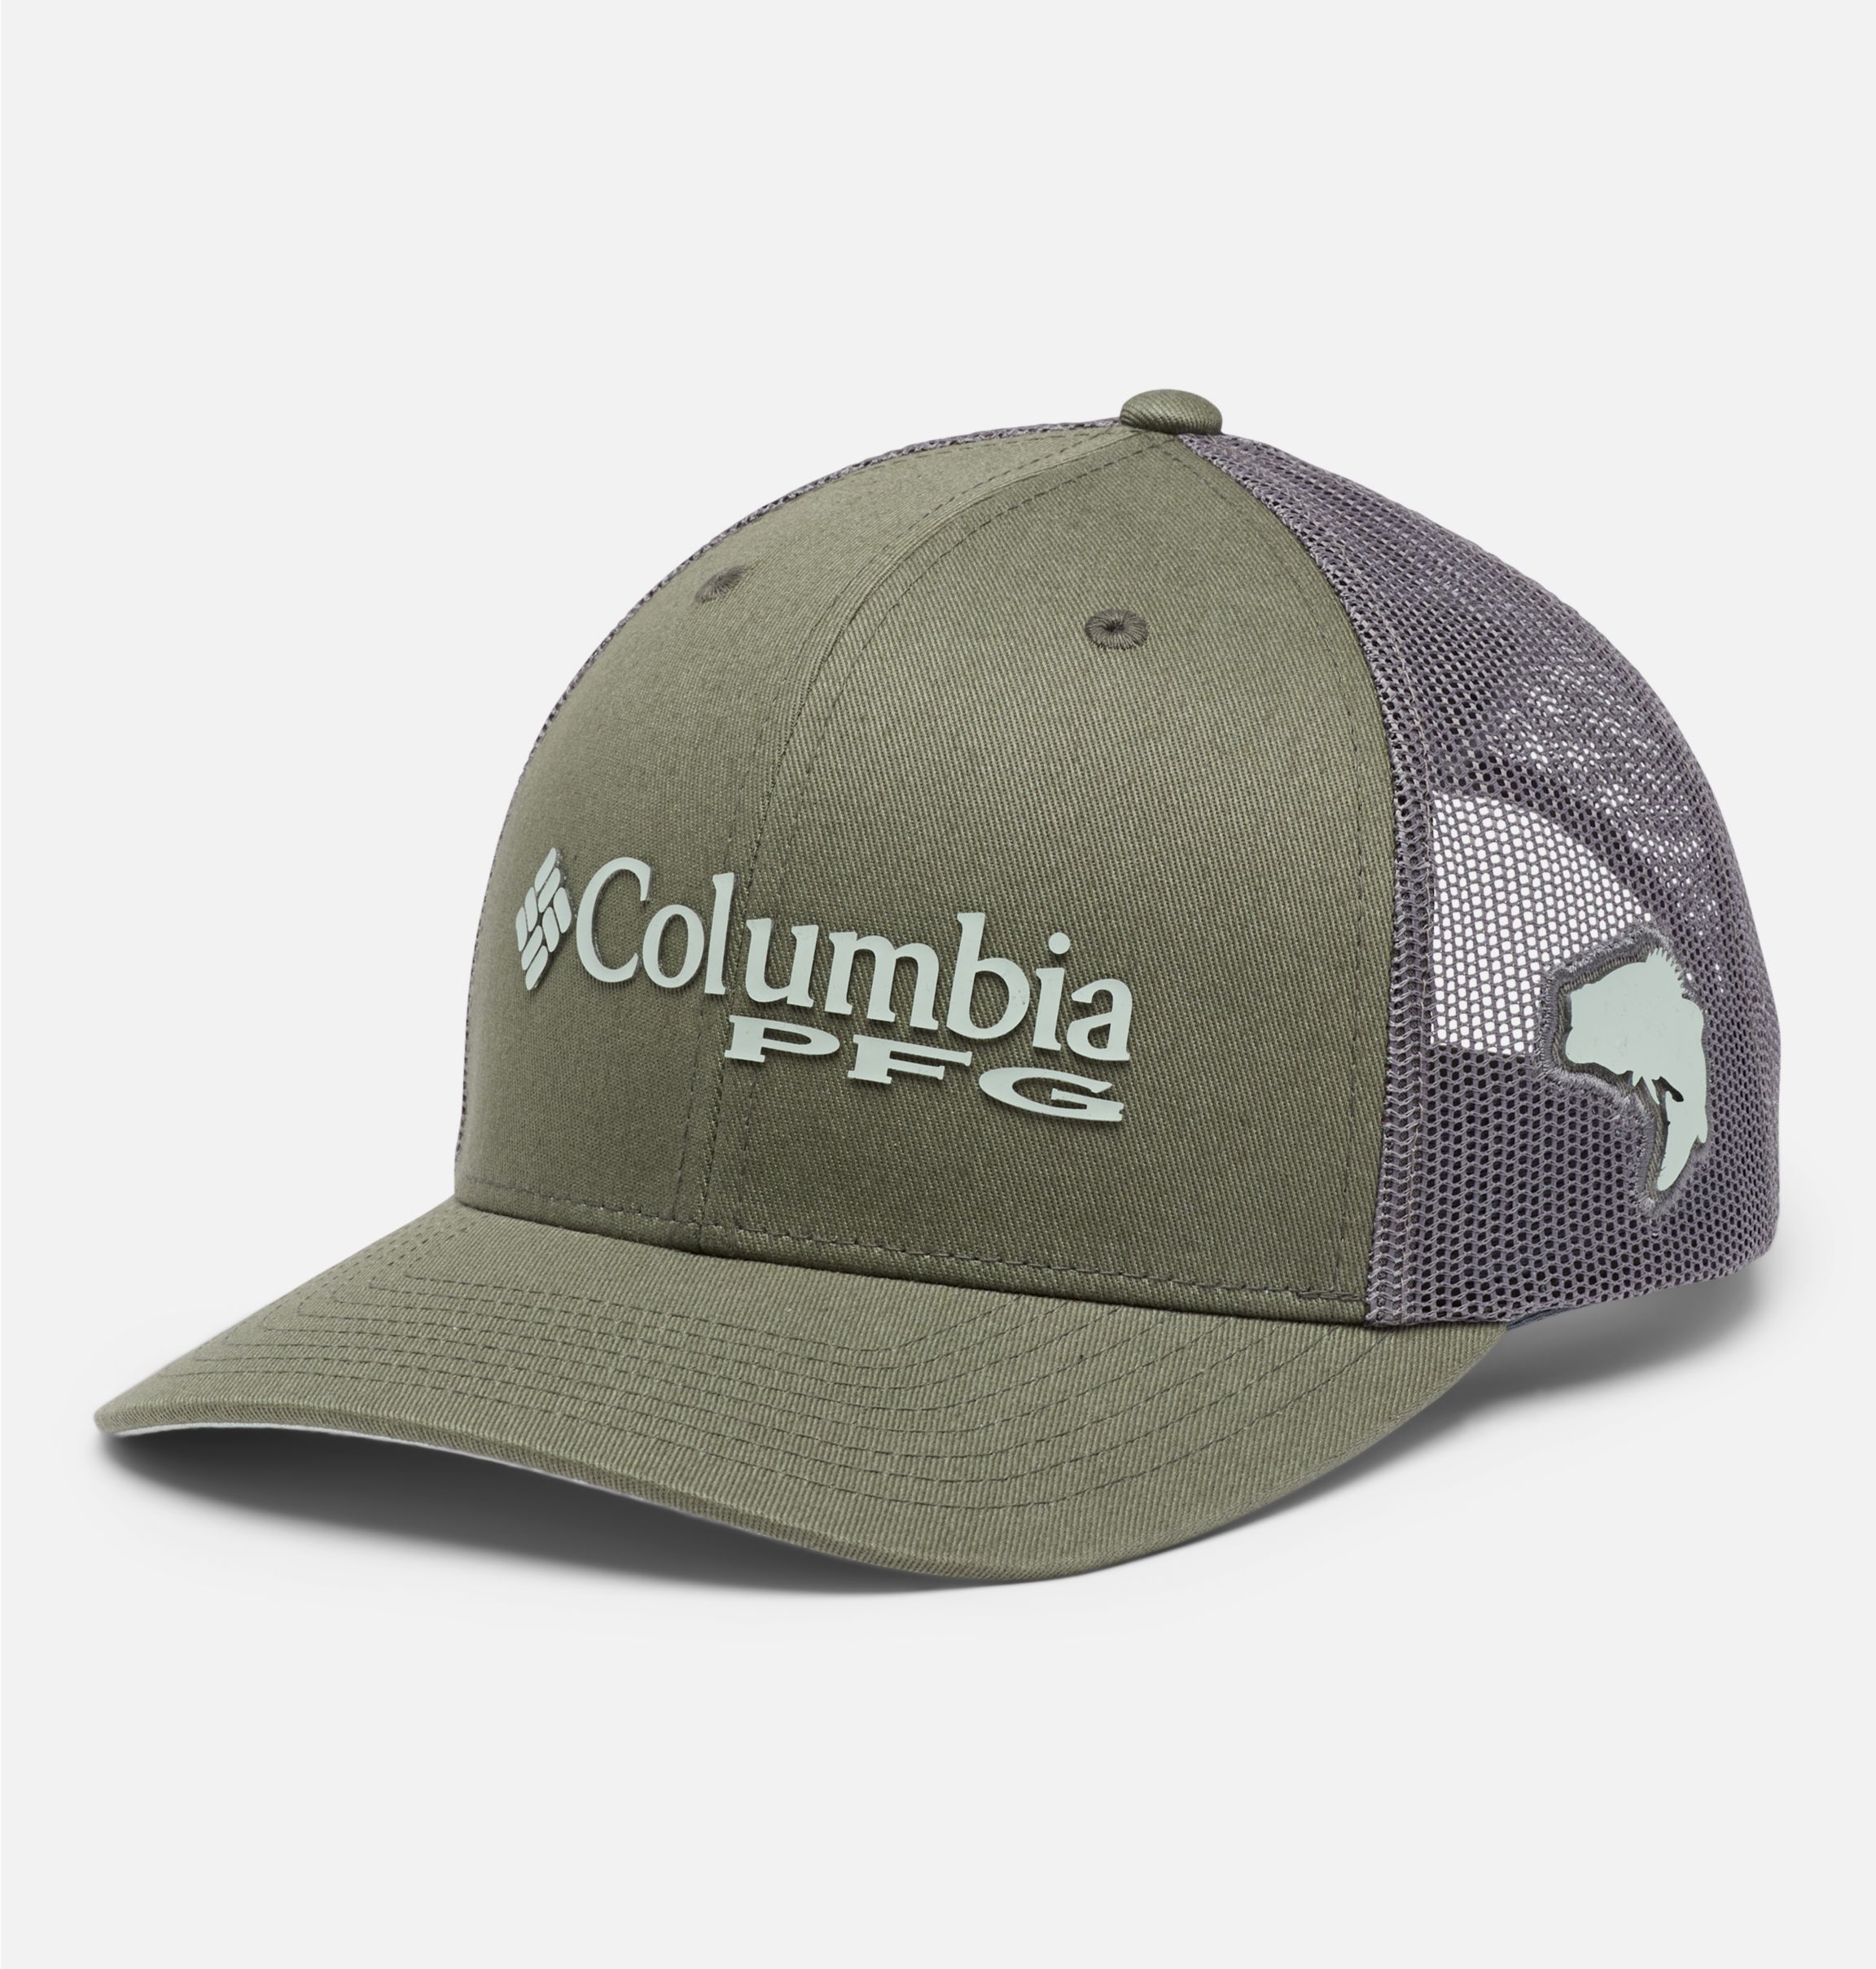 COLUMBIA PFG Fishing Mesh Snapback Trucker Hat Cap New Fast Shipping